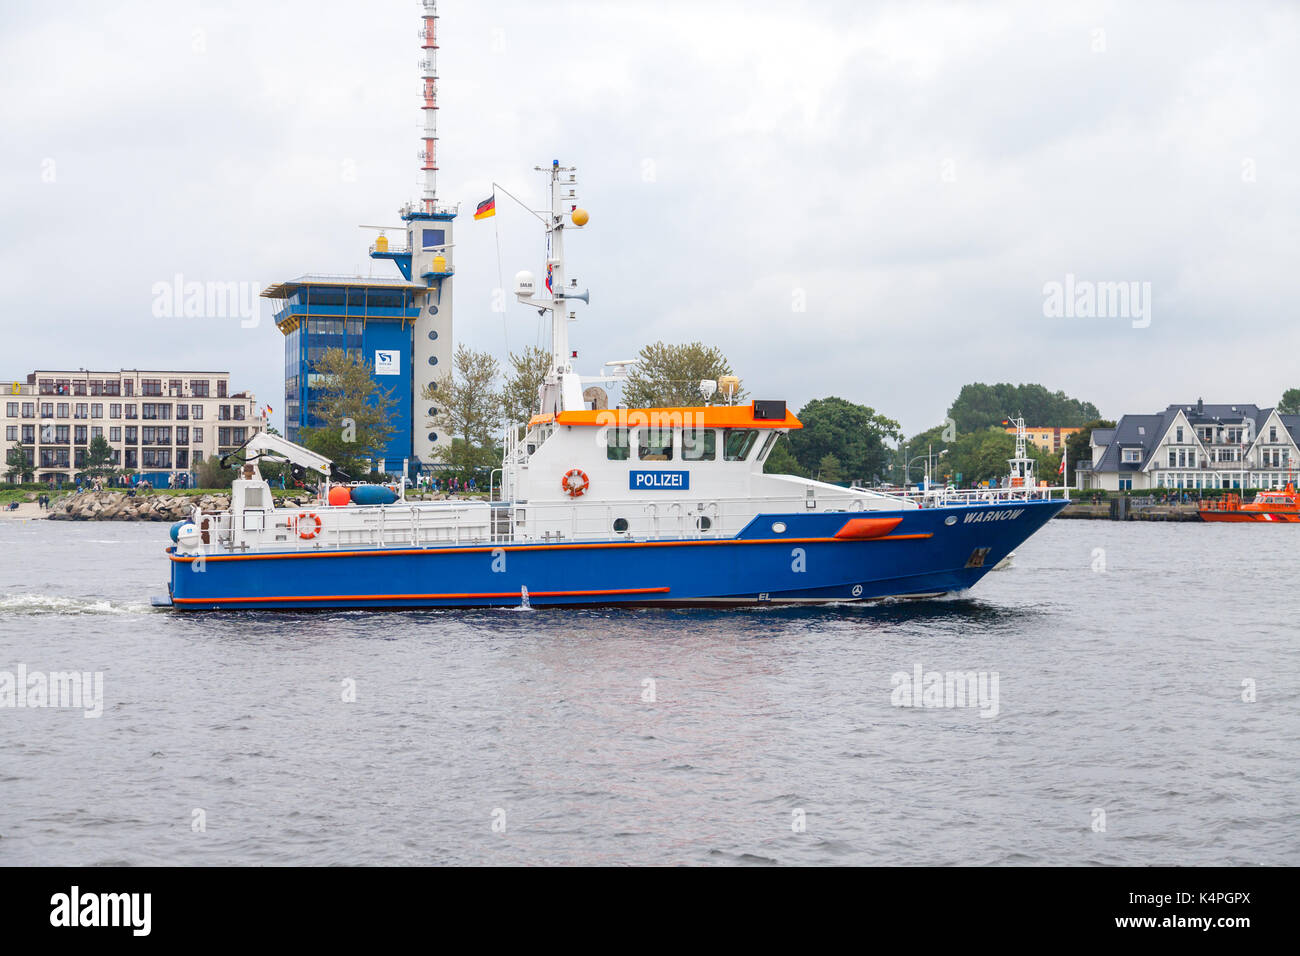 Warnemünde / Deutschland - 12. August 2017: deutsche Polizeischiffe fahren bei öffentlichen Veranstaltungen hanse Sail in warnemünde. Stockfoto